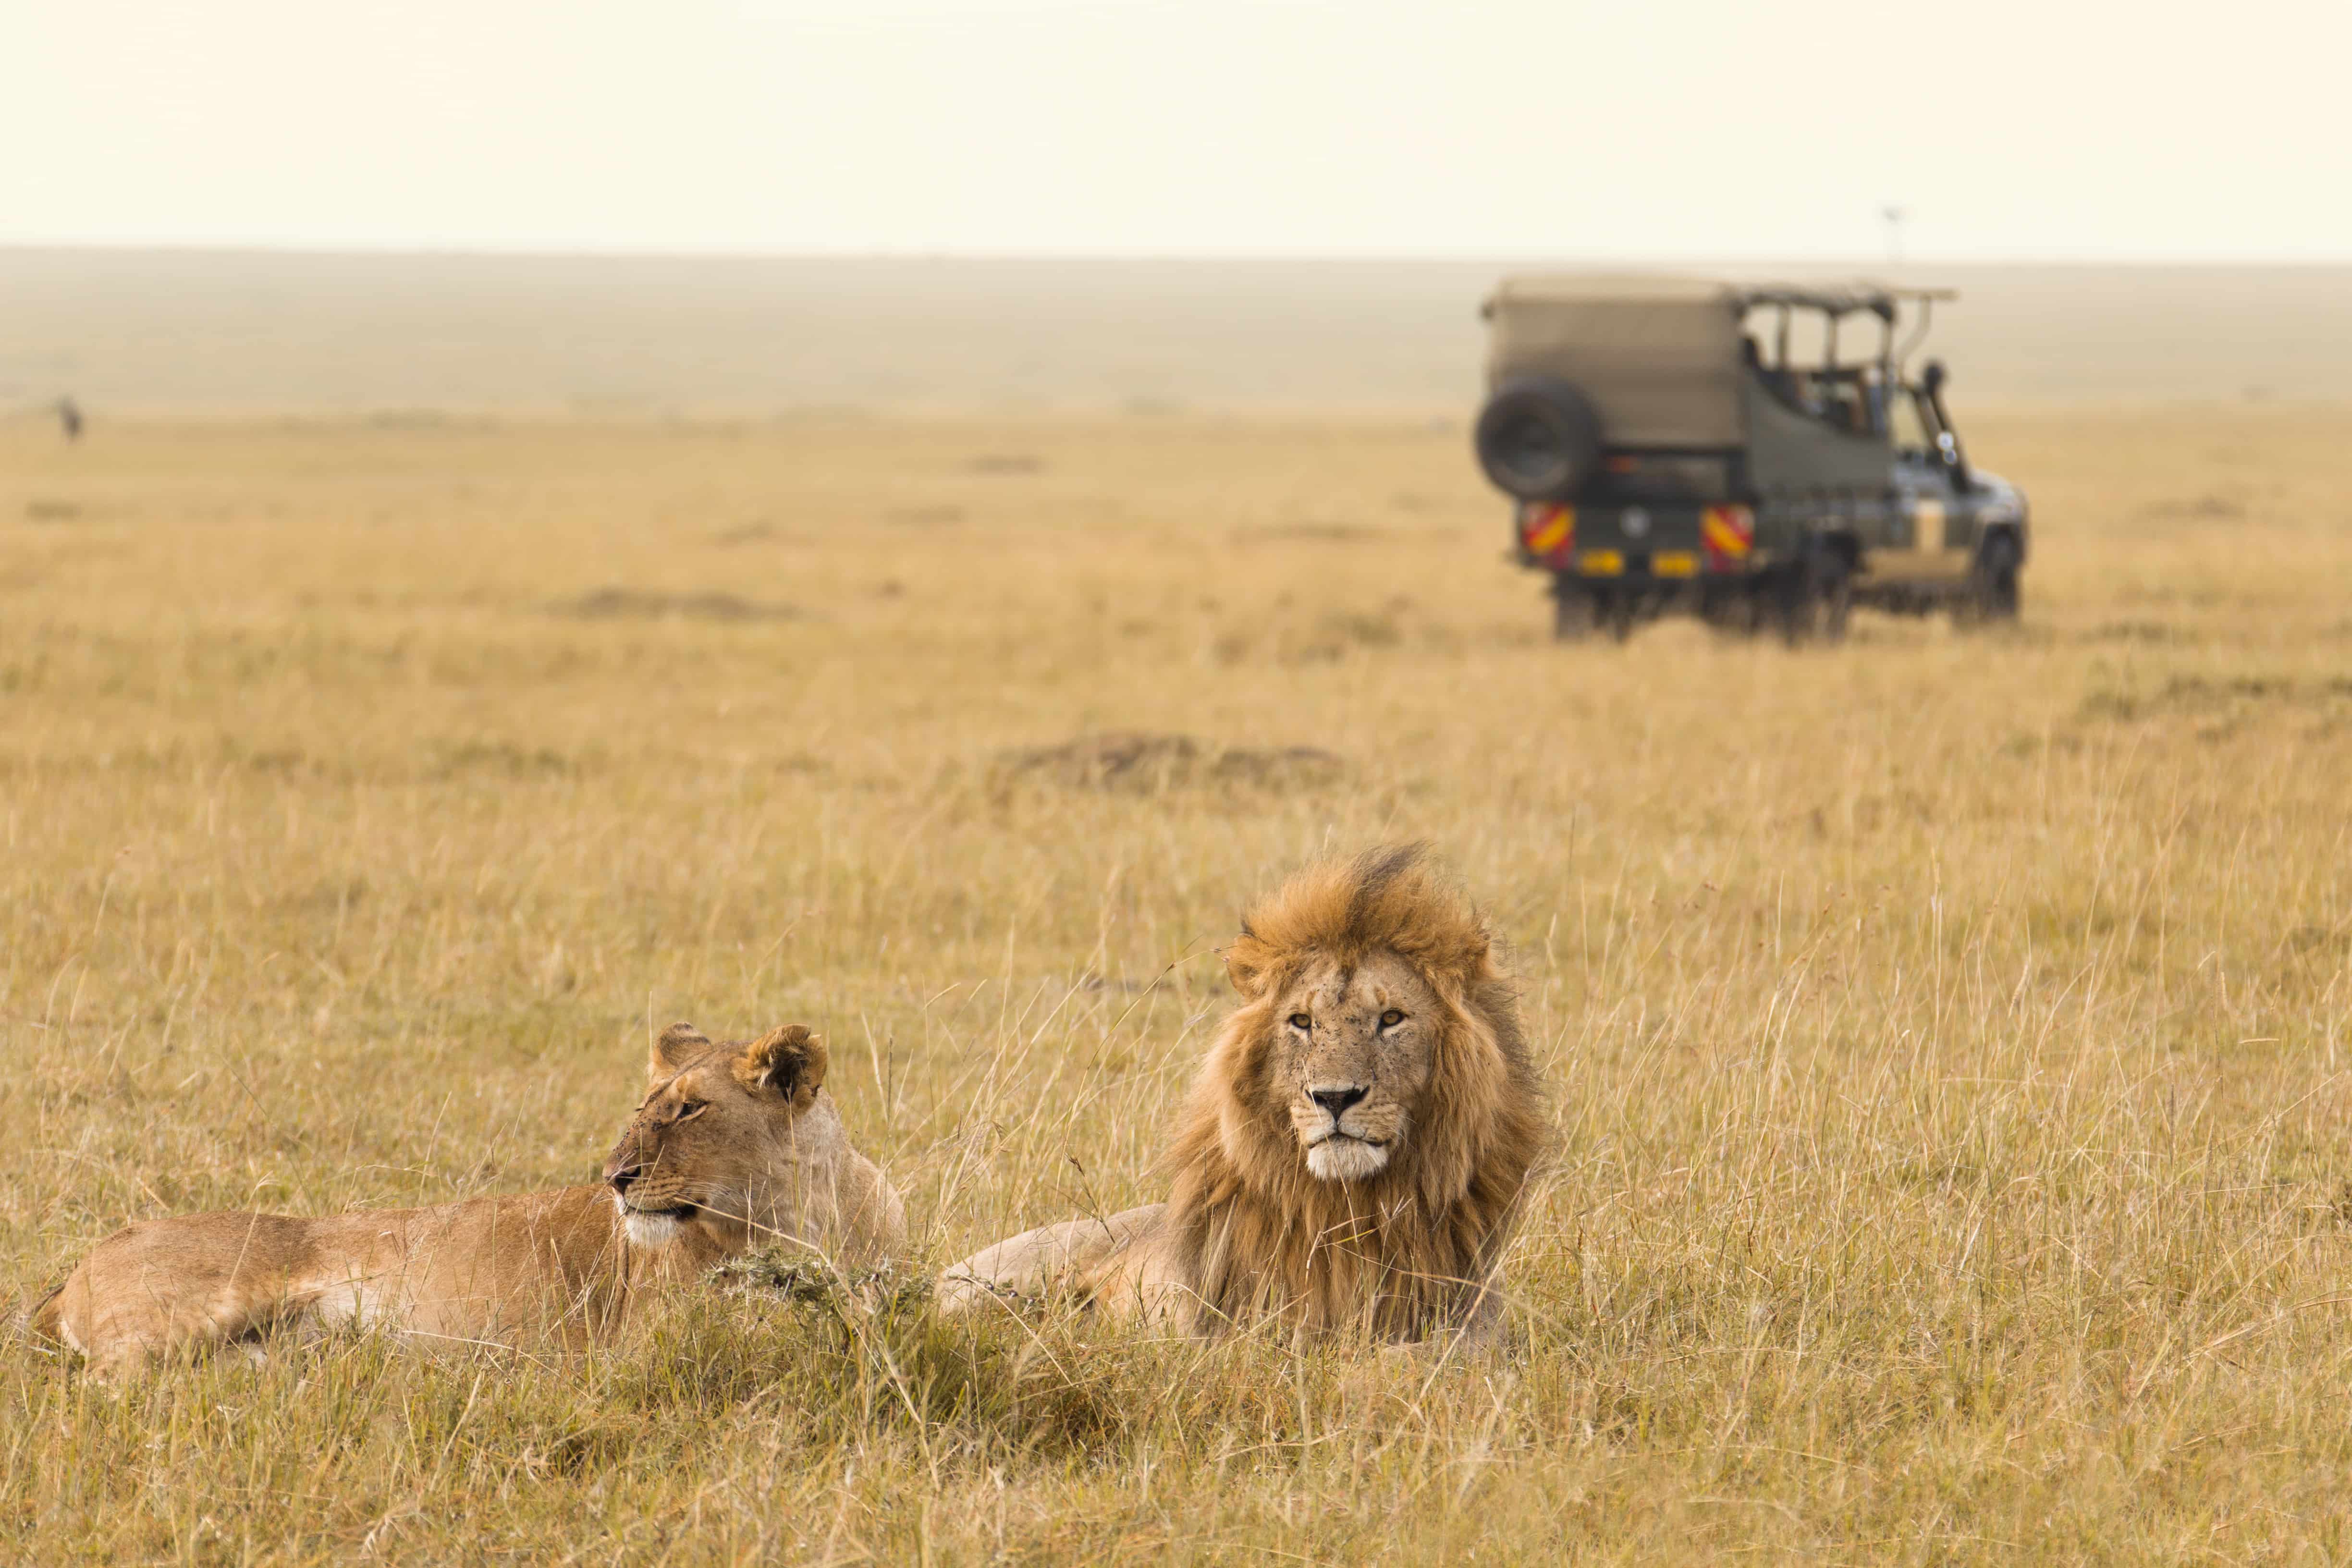 Lions on safari in Kenya